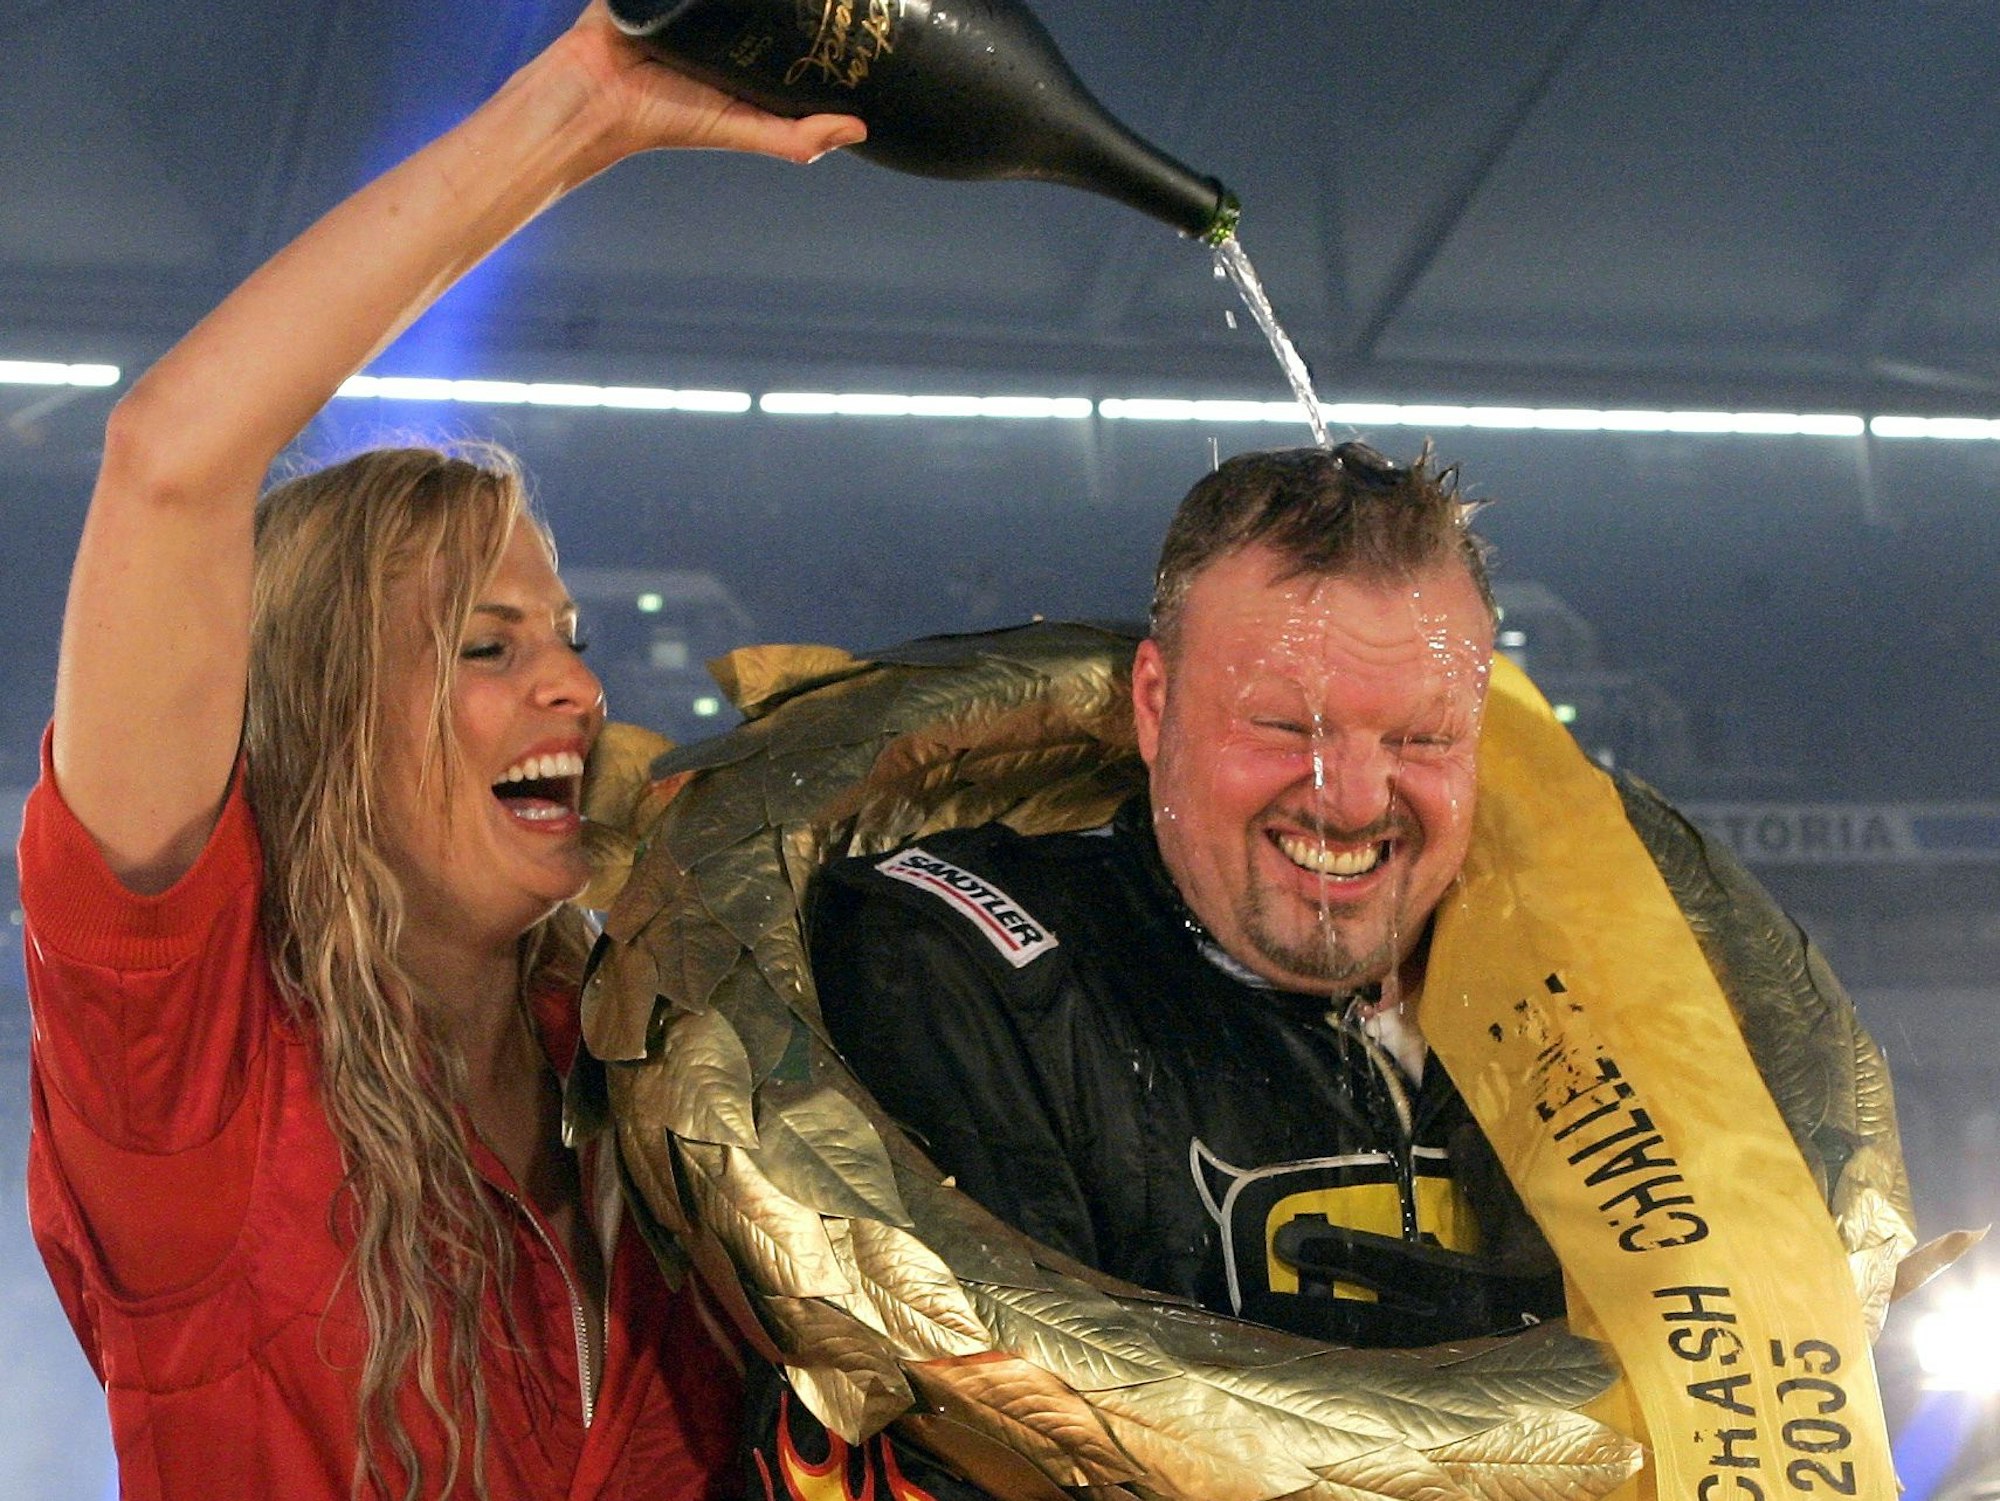 Stefan Raab ist für seinen Ehrgeiz bekannt. Klar, dass der Moderator nach seinem Sieg bei der Stock Car Crash Challenge am 25. Juni 2005 in der Arena AufSchalke eine Sektdusche von Moderatorin Sonya Kraus erhält.